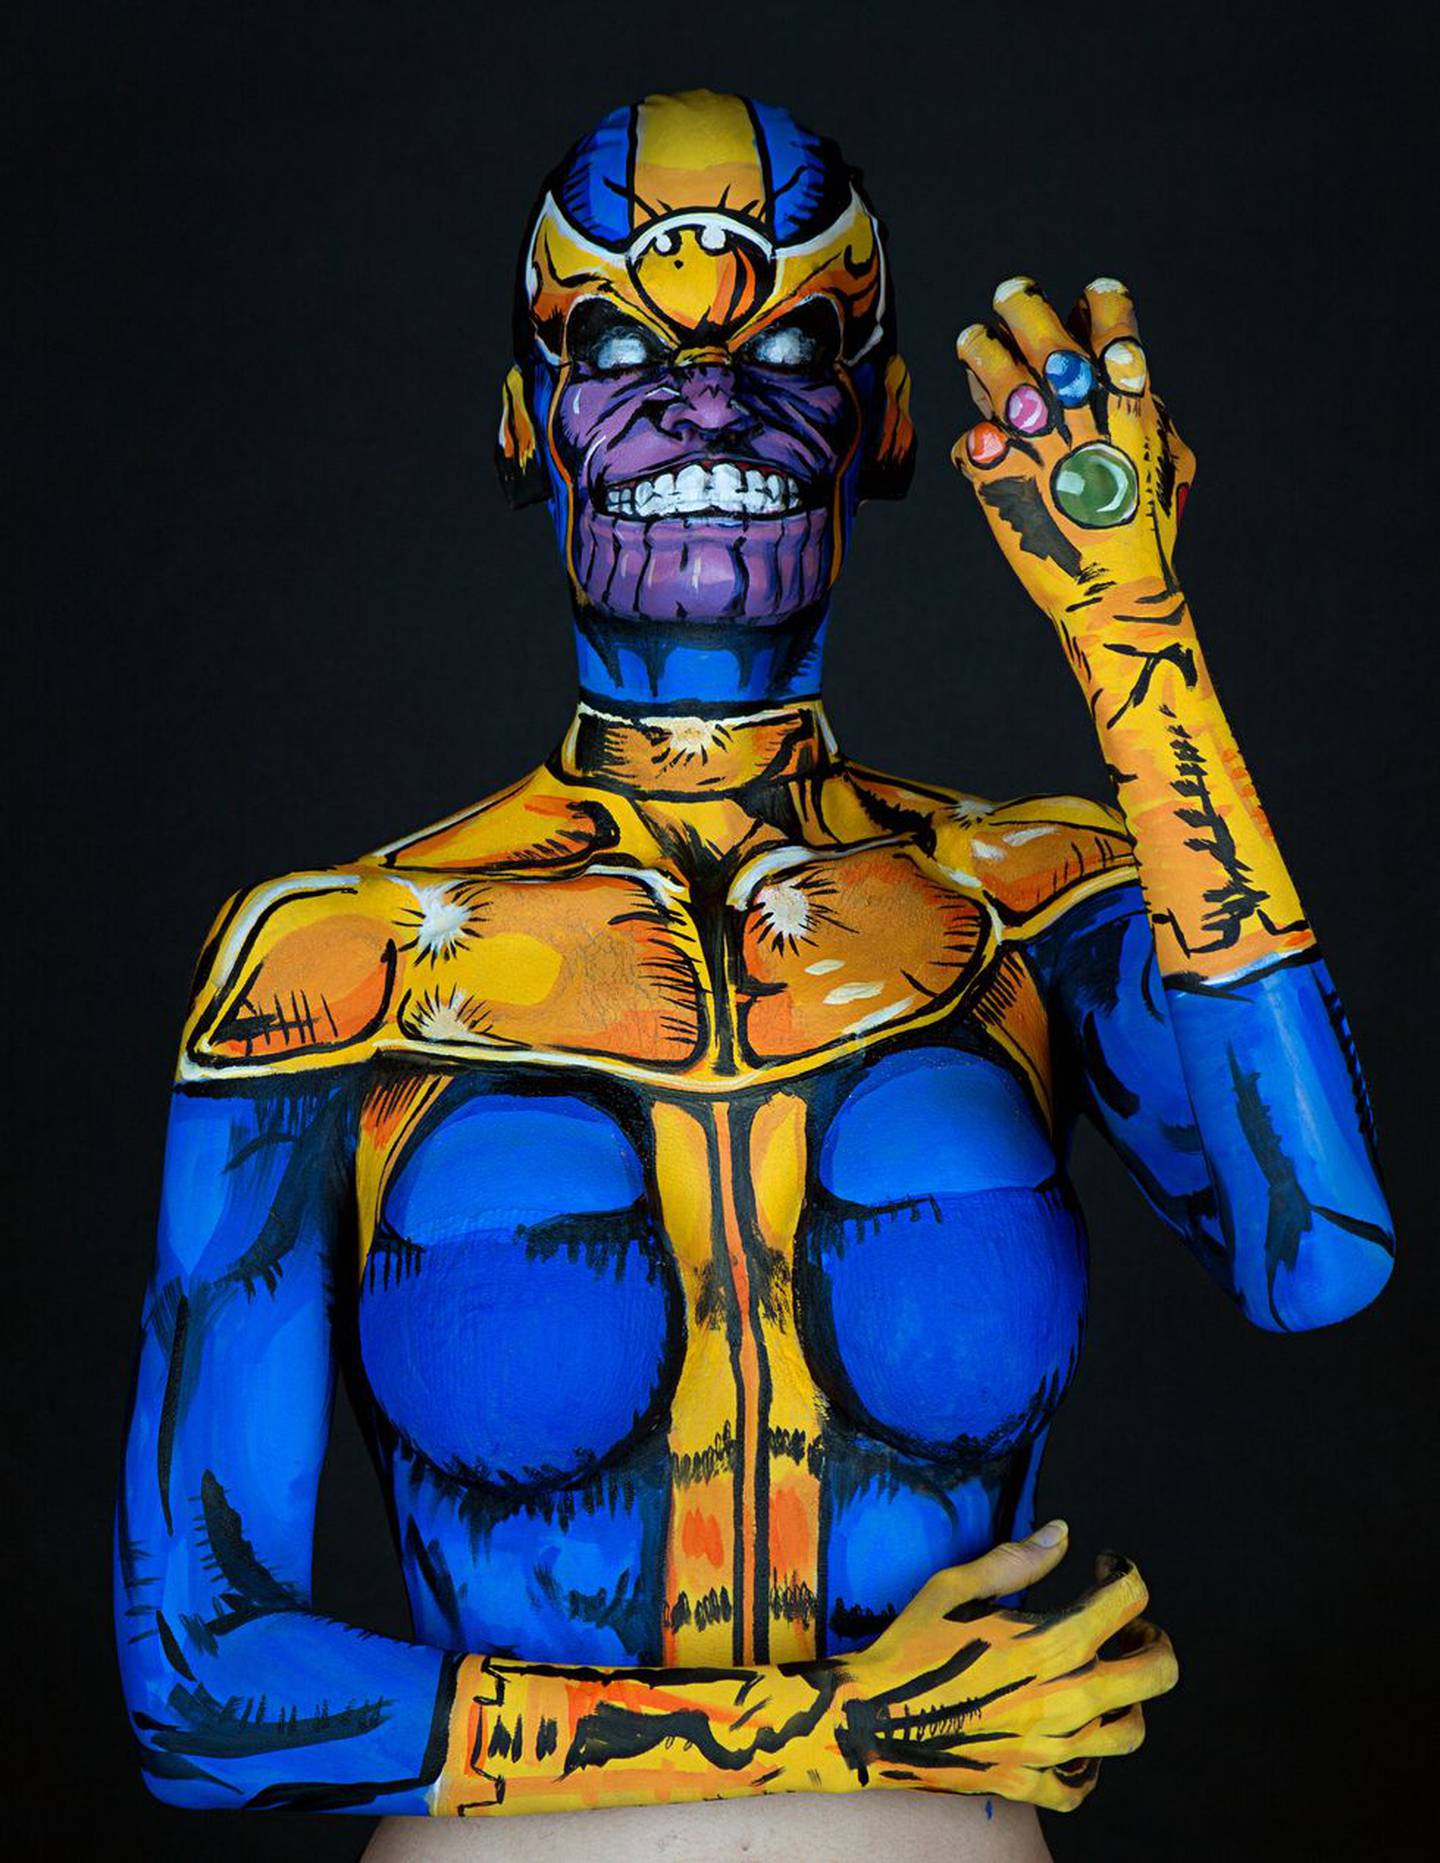 Compartimos un clásico olvidado: el video time lapse de Kay Pike donde se convierte en Thanos, el mayor villano de Marvel en el MCU, usando body paint.